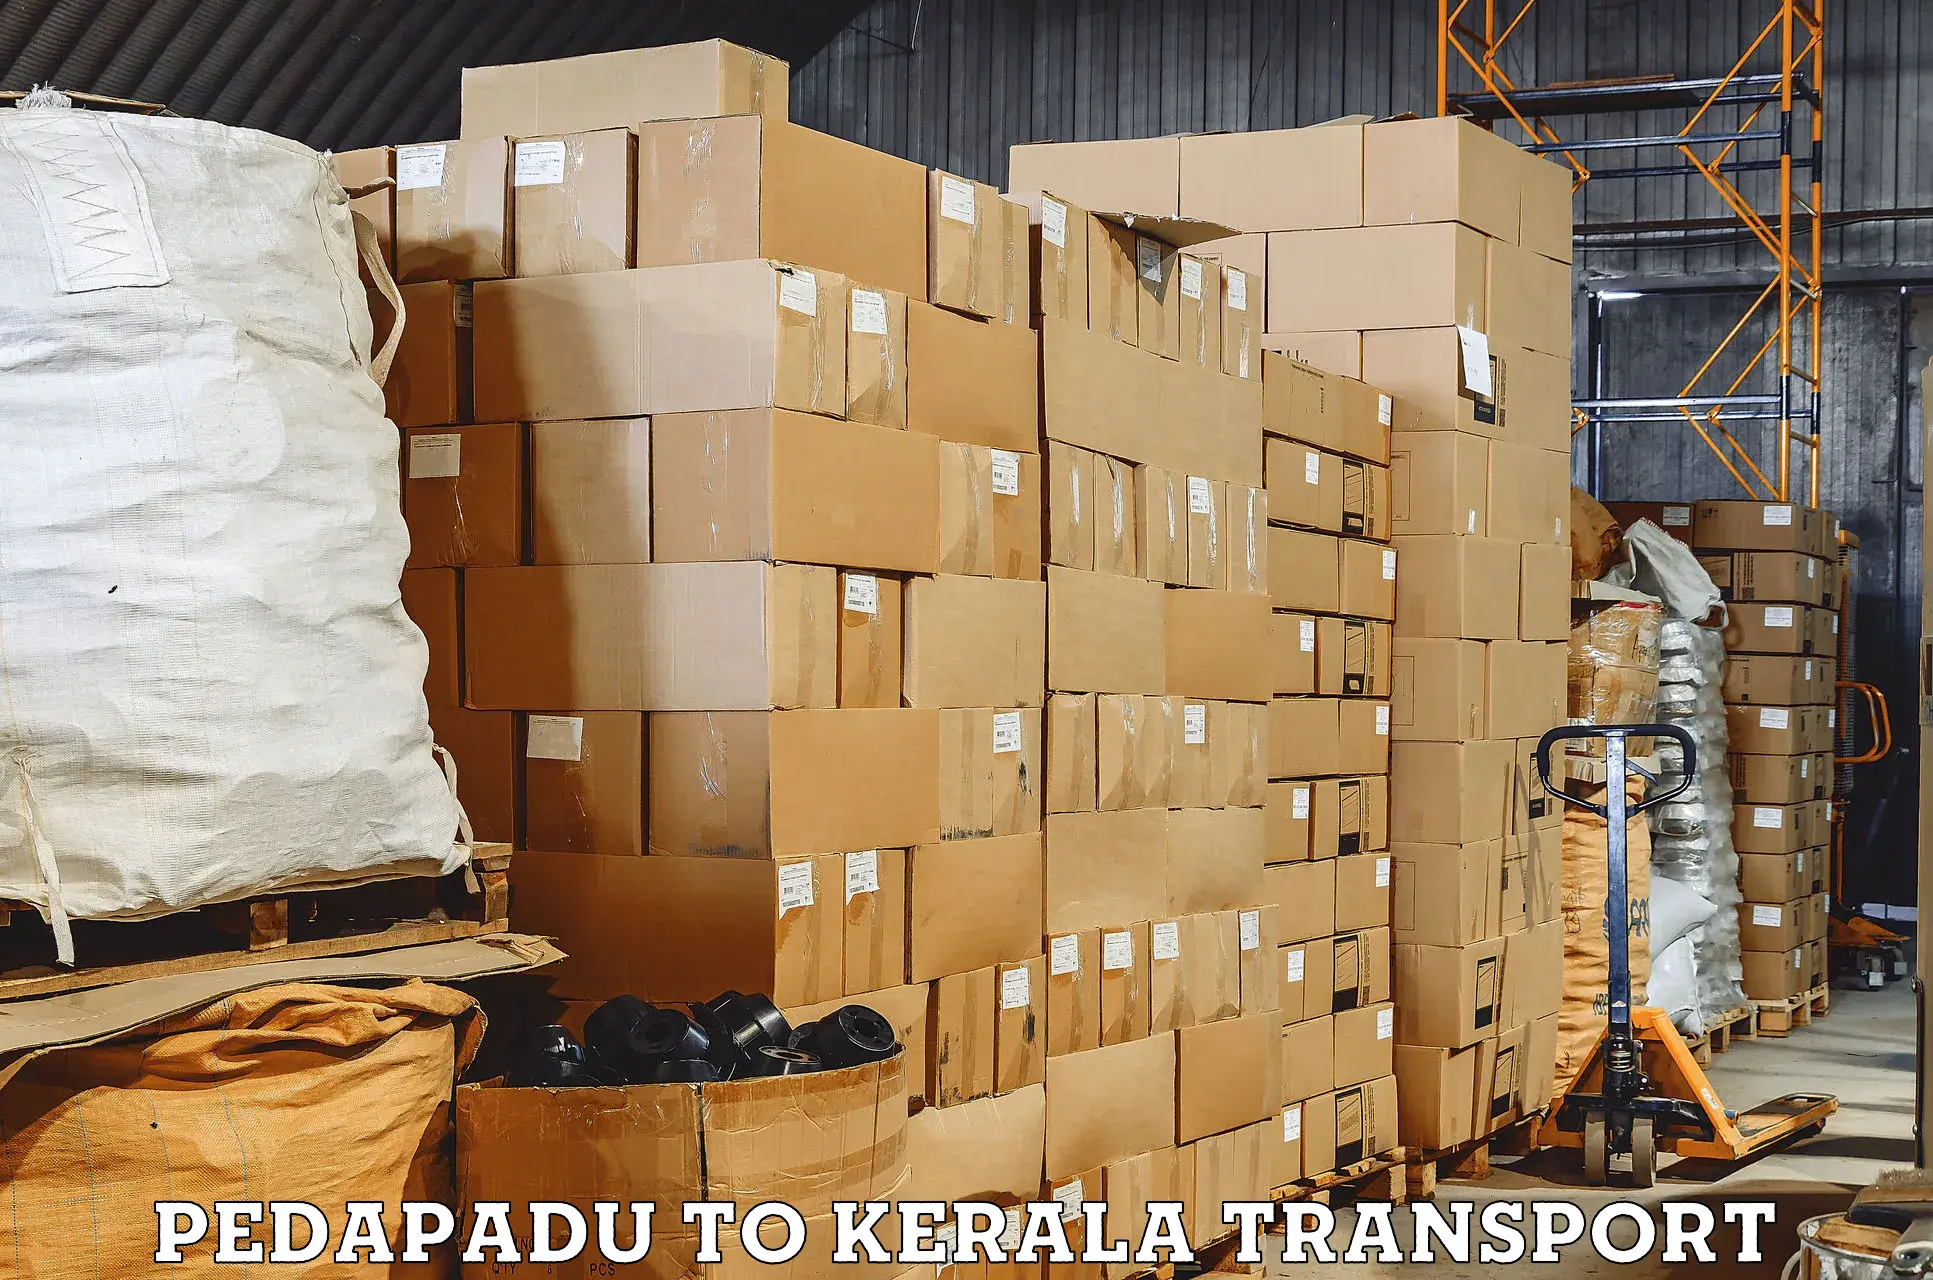 Online transport booking Pedapadu to Parippally